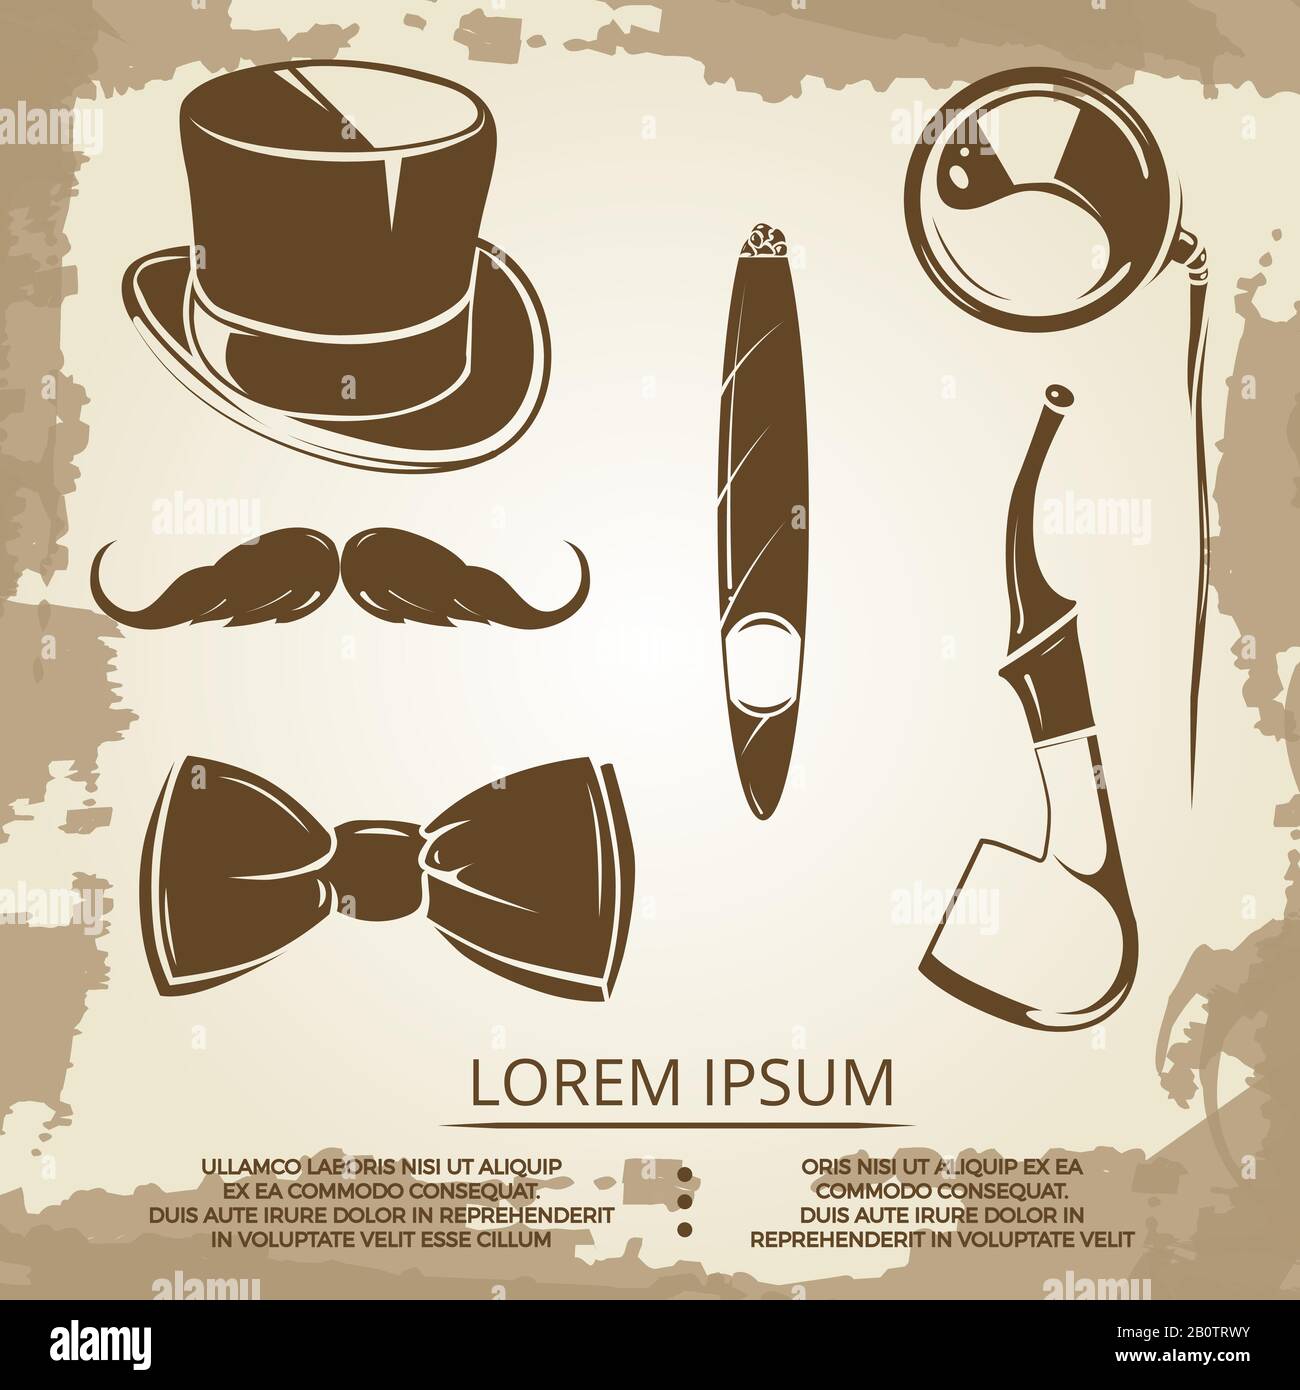 Oggetti stile Getlemen - cilindro, cravatta di prua, tabacco. Illustrazione delle icone dell'annata vettoriale Illustrazione Vettoriale